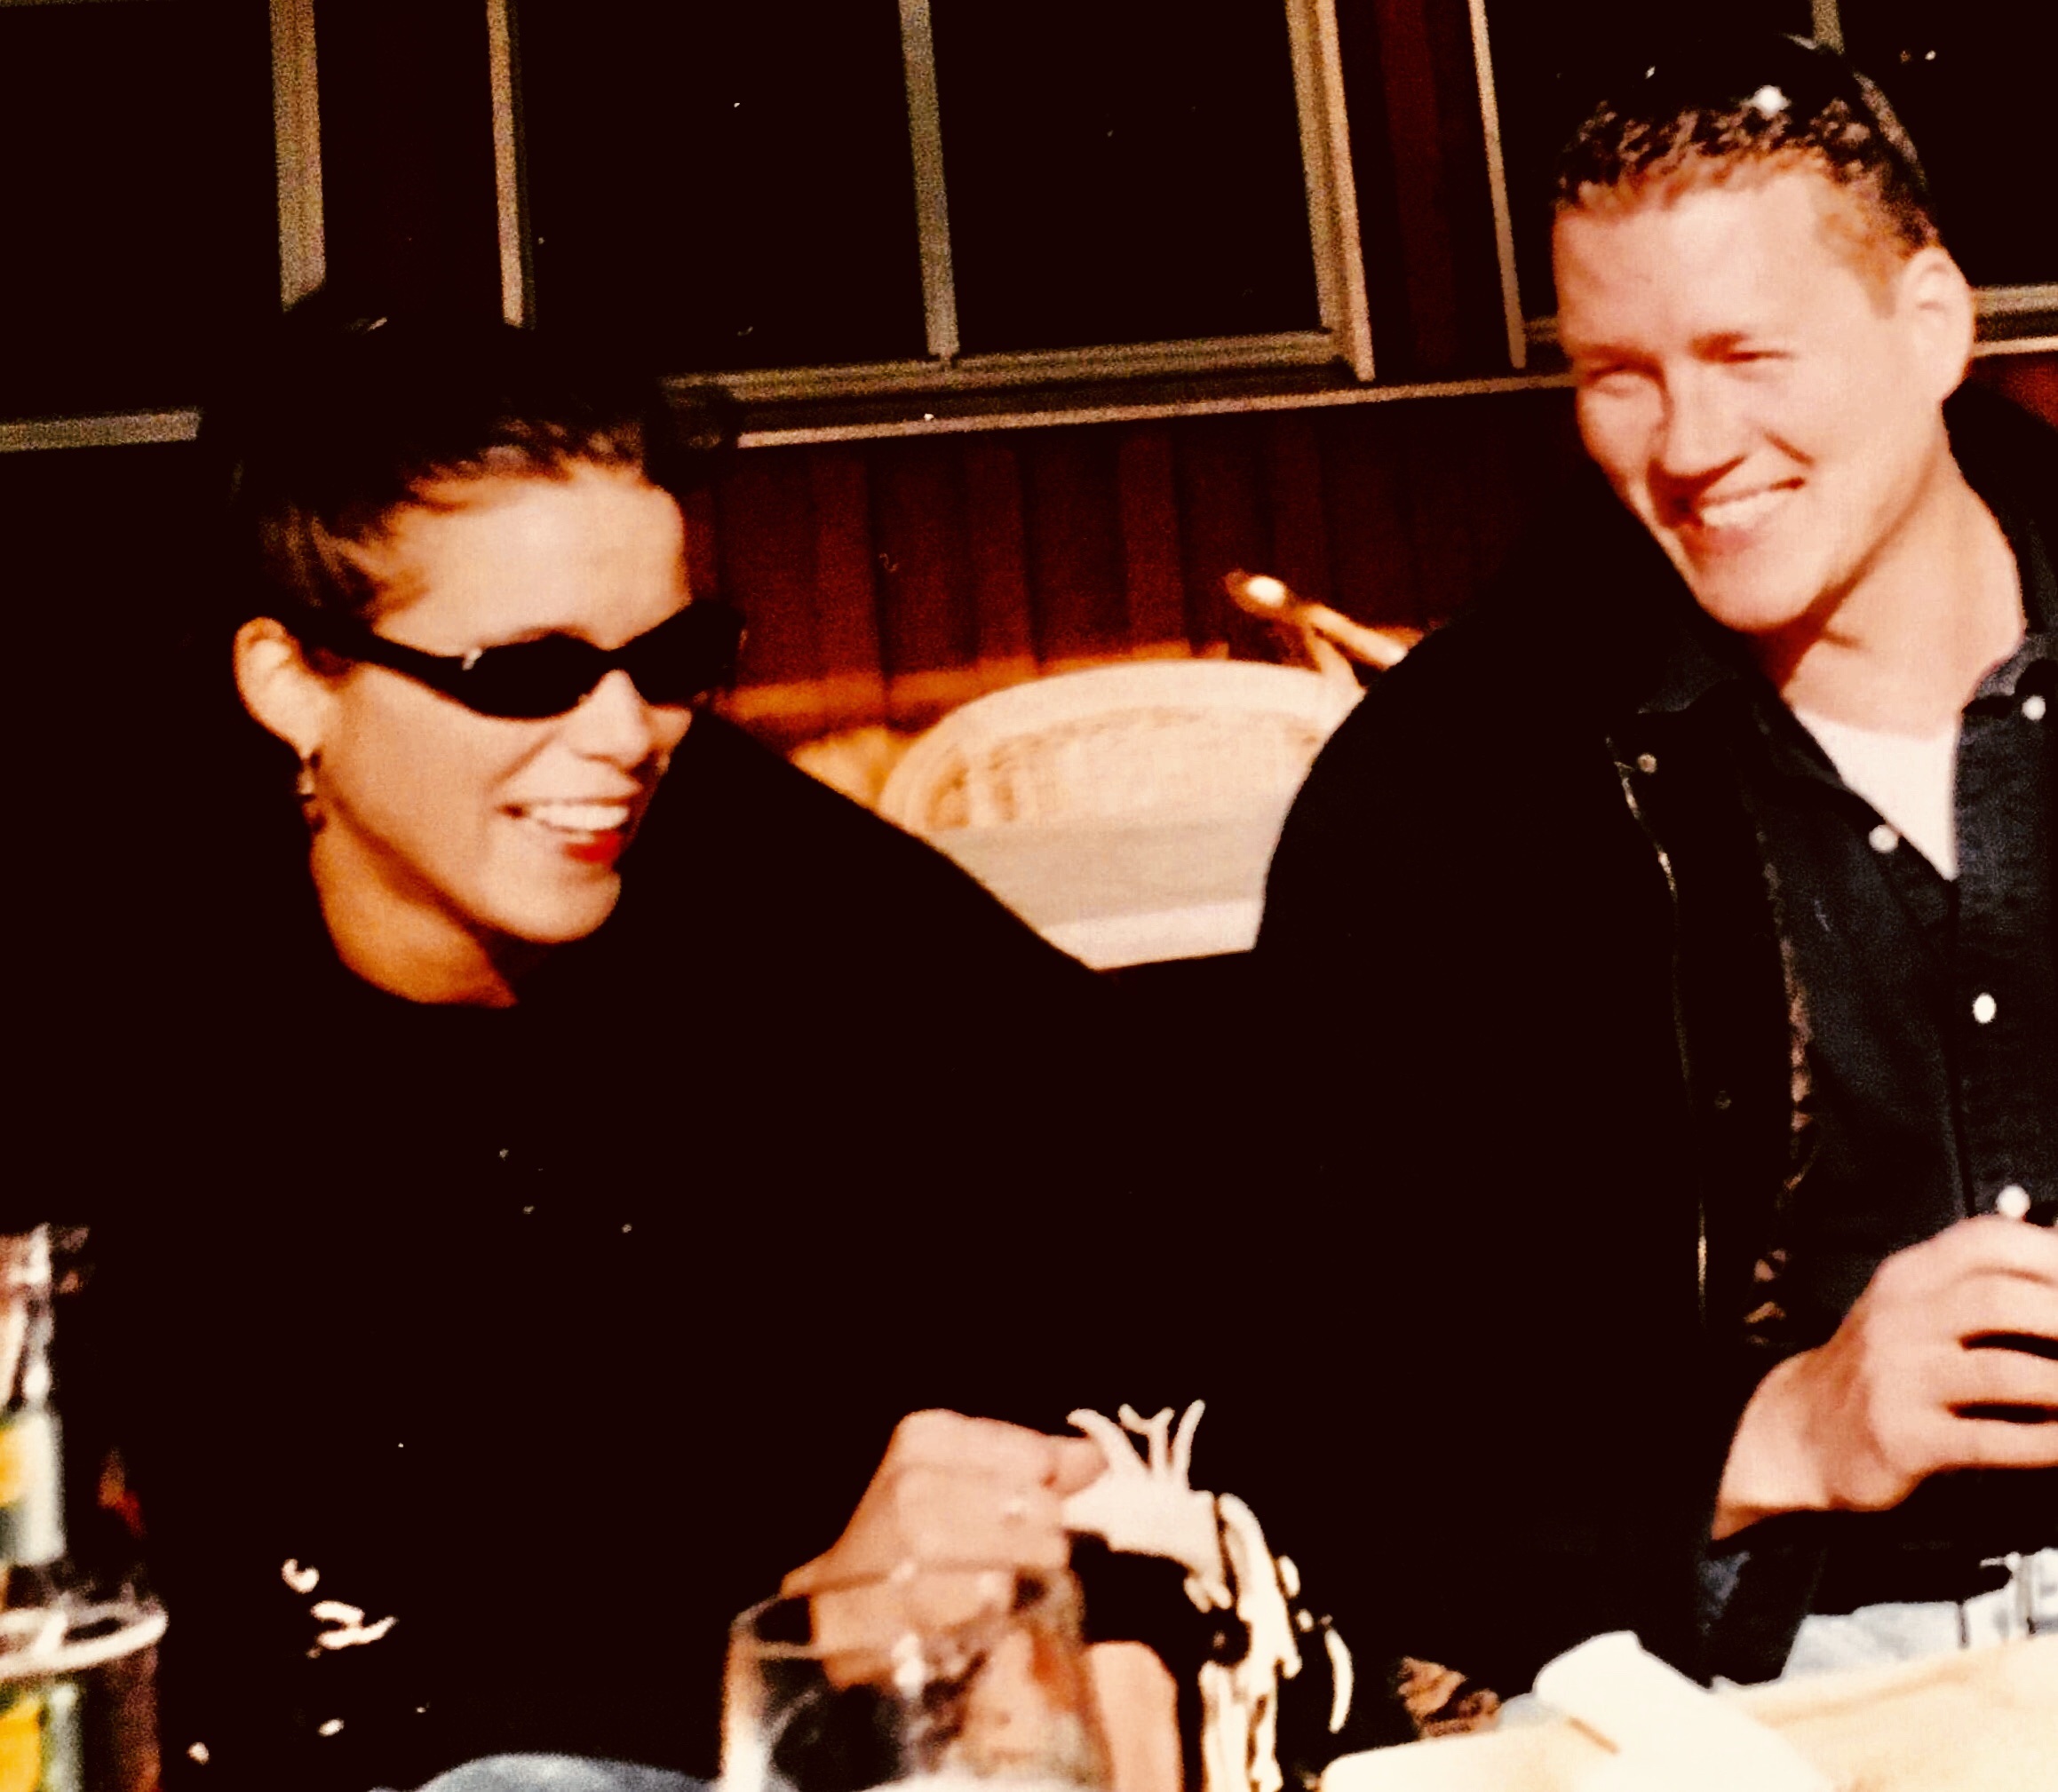 Kasey & Morten circa 1999